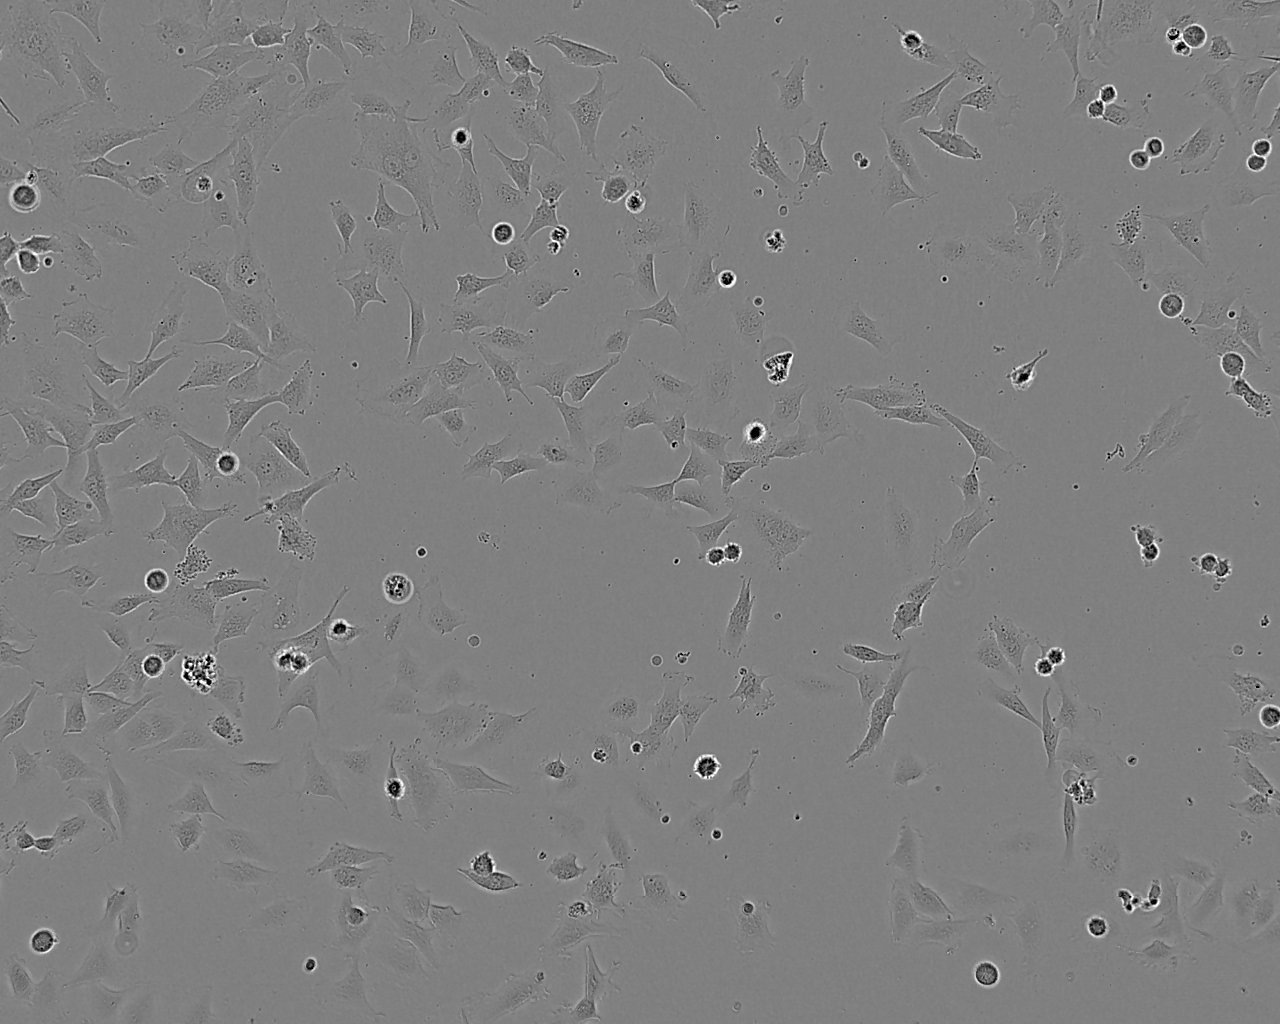 SNU-5 Cell|人胃癌细胞,SNU-5 Cell